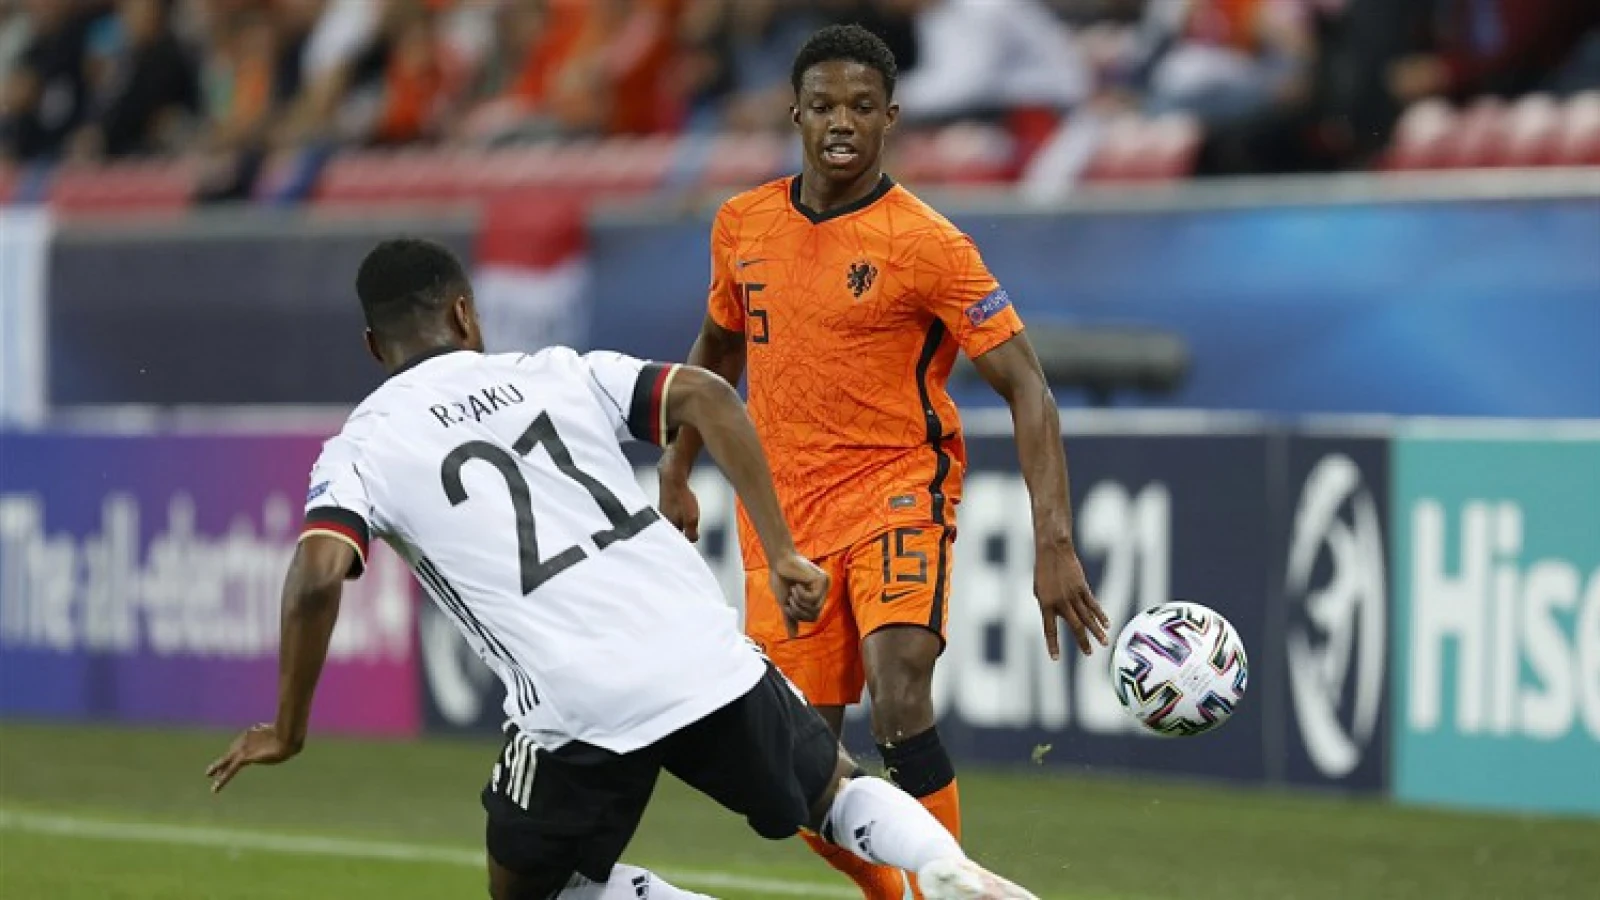 Jong Oranje uitgeschakeld in halve finale EK na verlies tegen Jong Duitsland